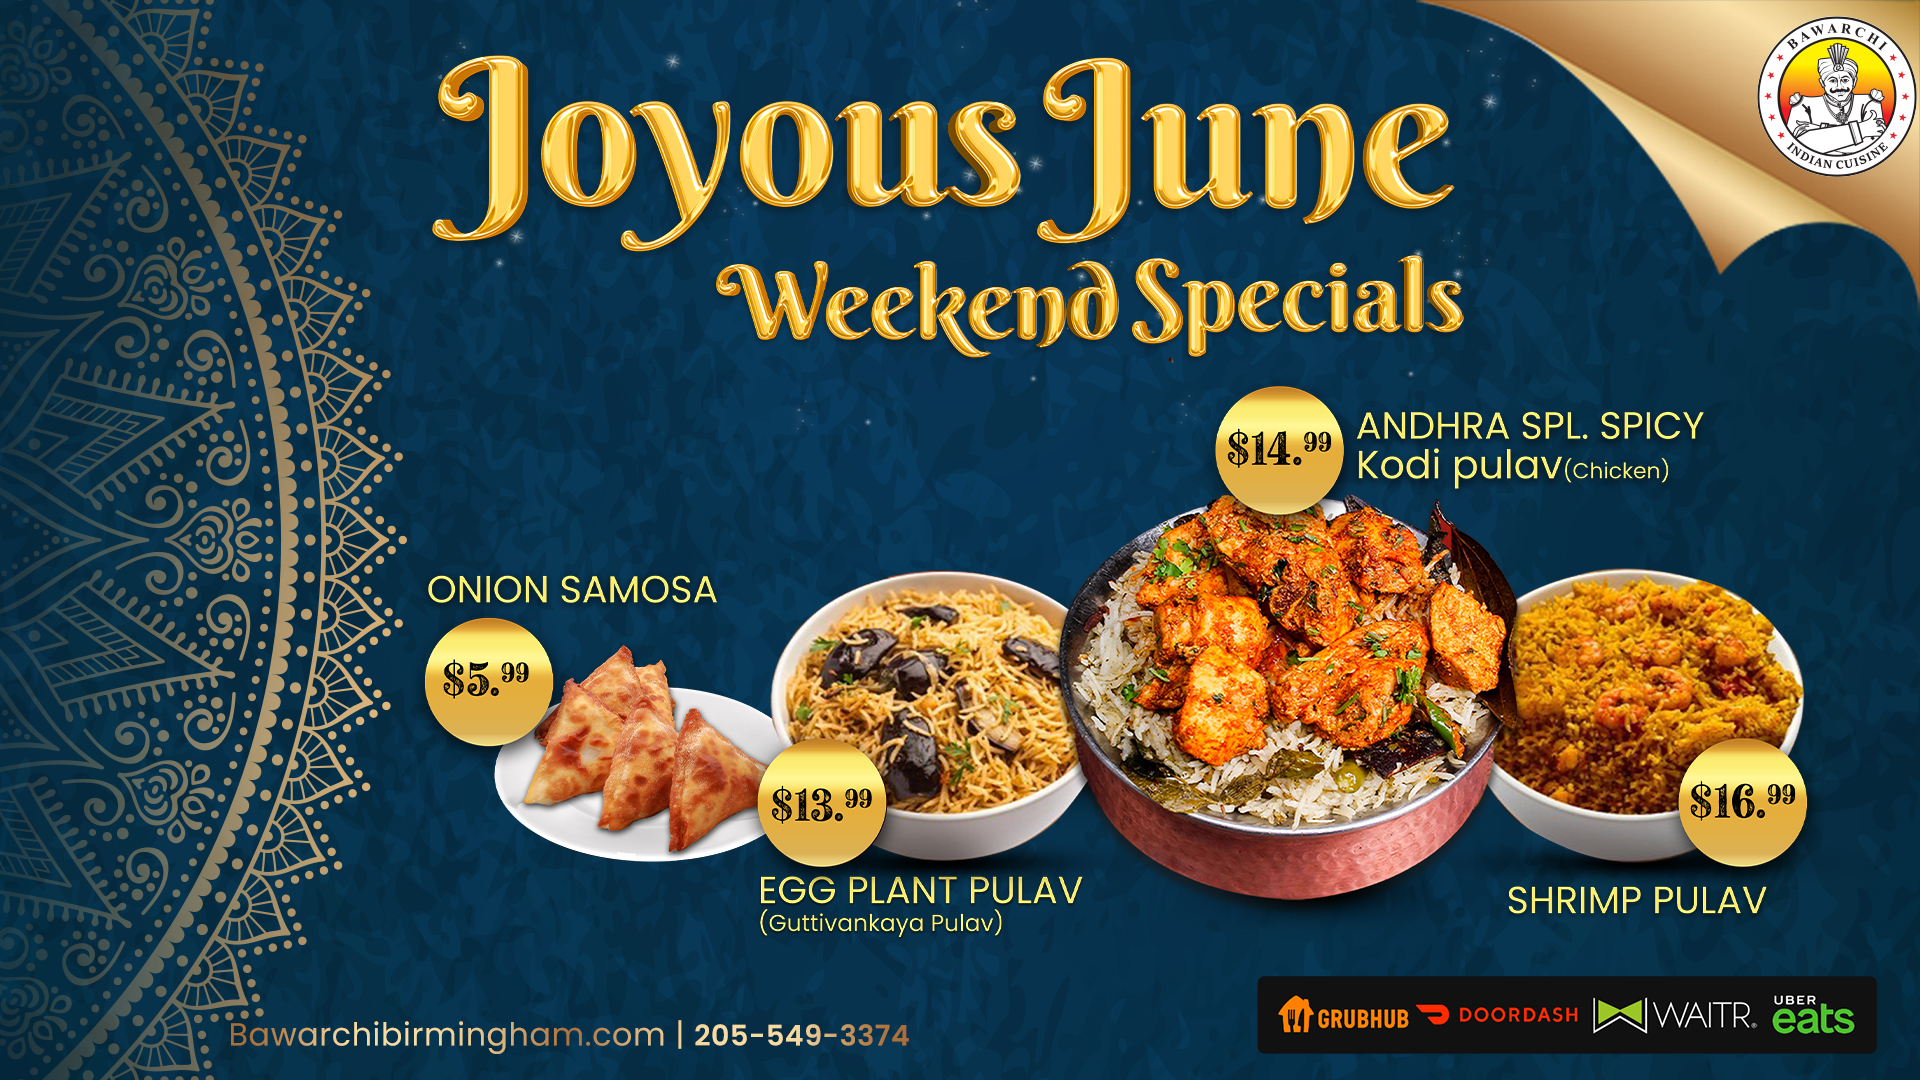 Joyous June Weekend Specials